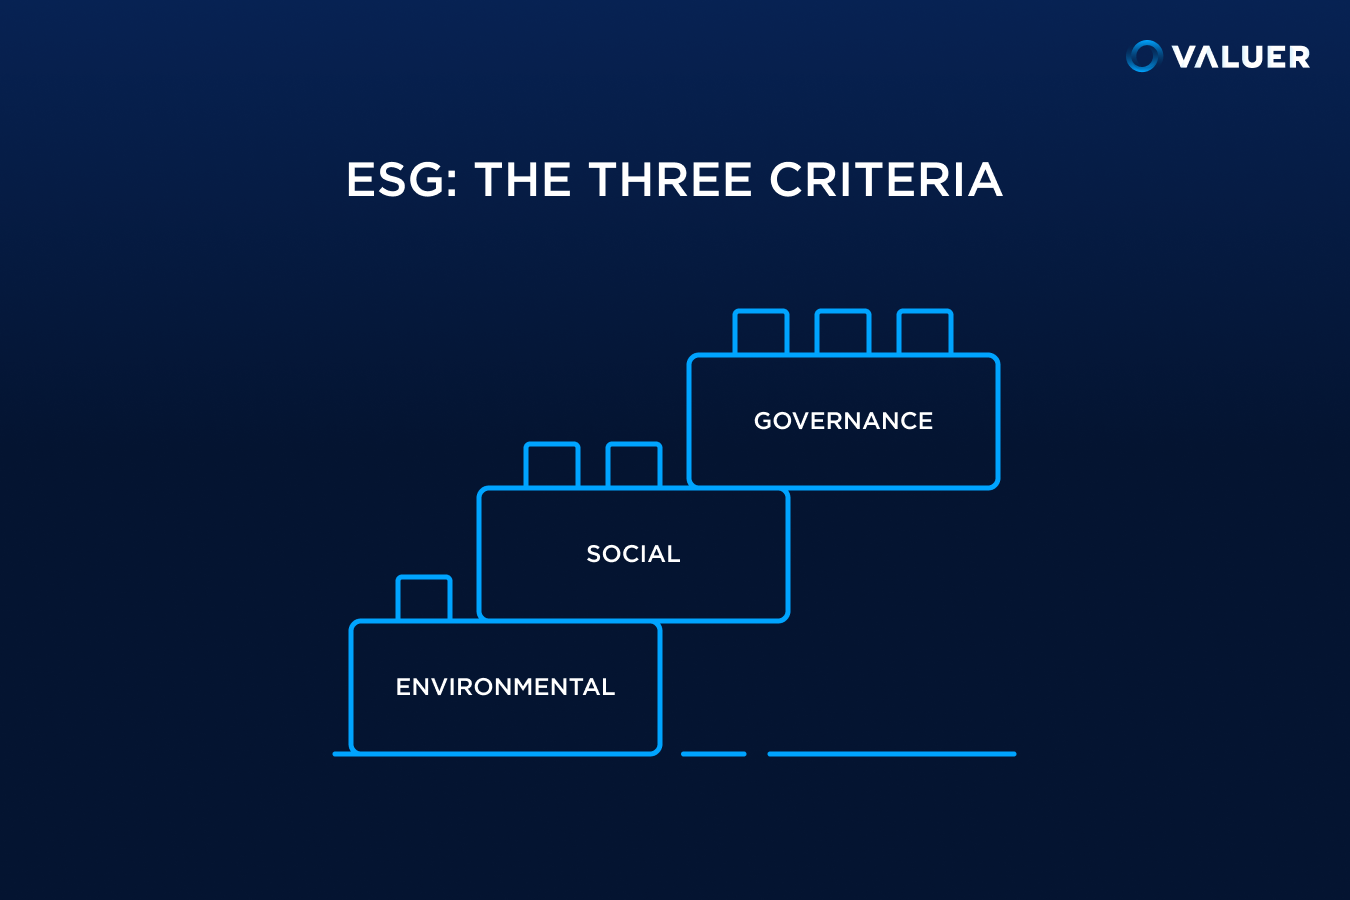 The three criteria of ESG